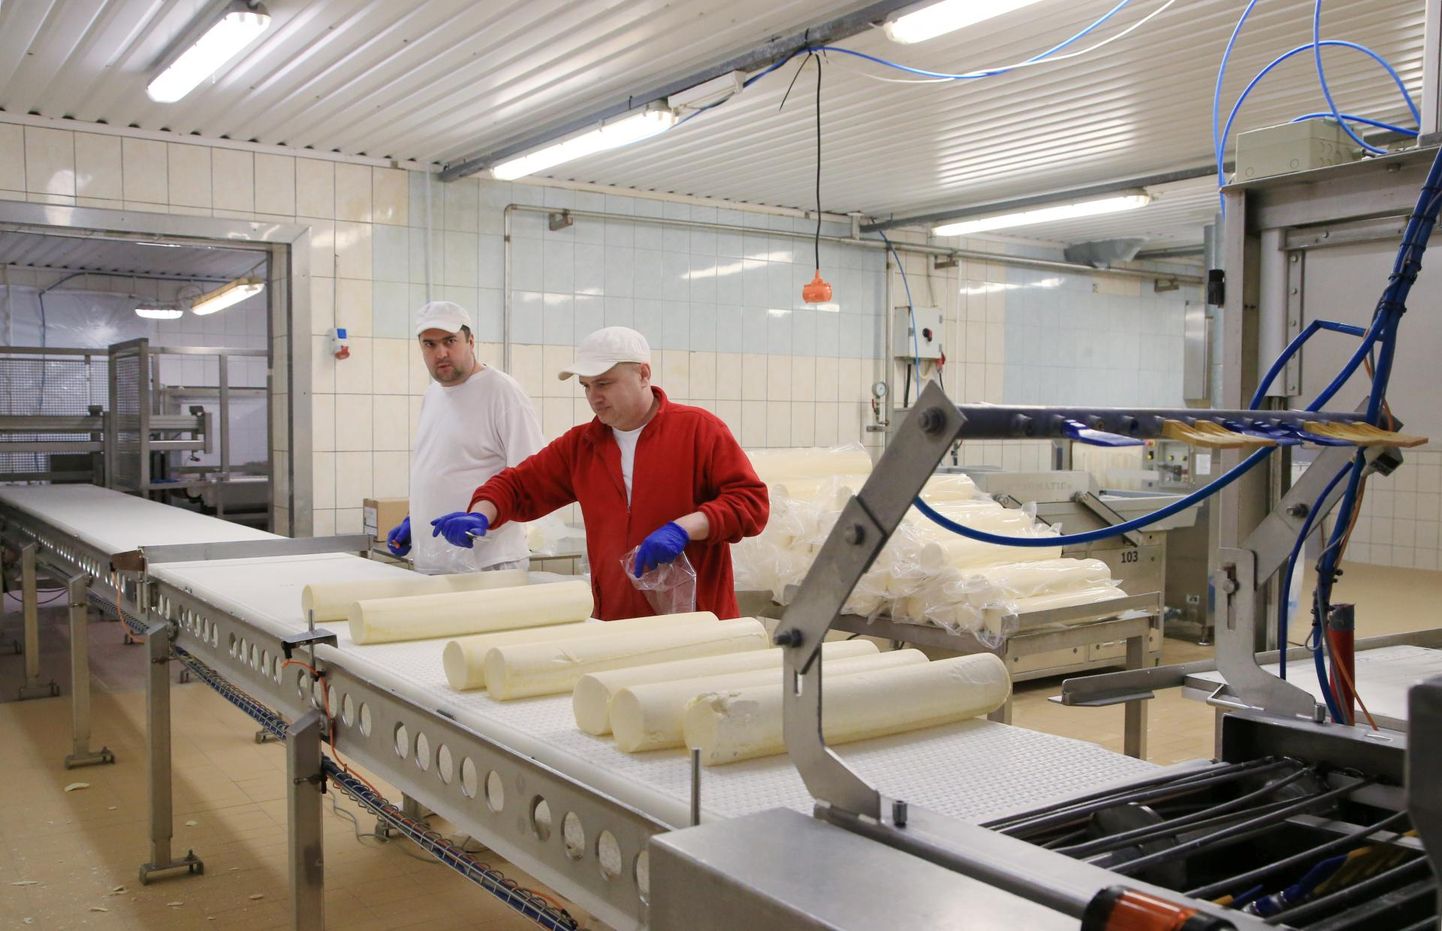 Toiduainetööstuses on töökäsi alati tarvis, paraku ei taha teeninduses või turismi alal elatist teeninud inimesed sageli toiduainesektorisse minna, kirjutab Eesti toiduainetööstuse liidu juhataja Sirje Potisepp.